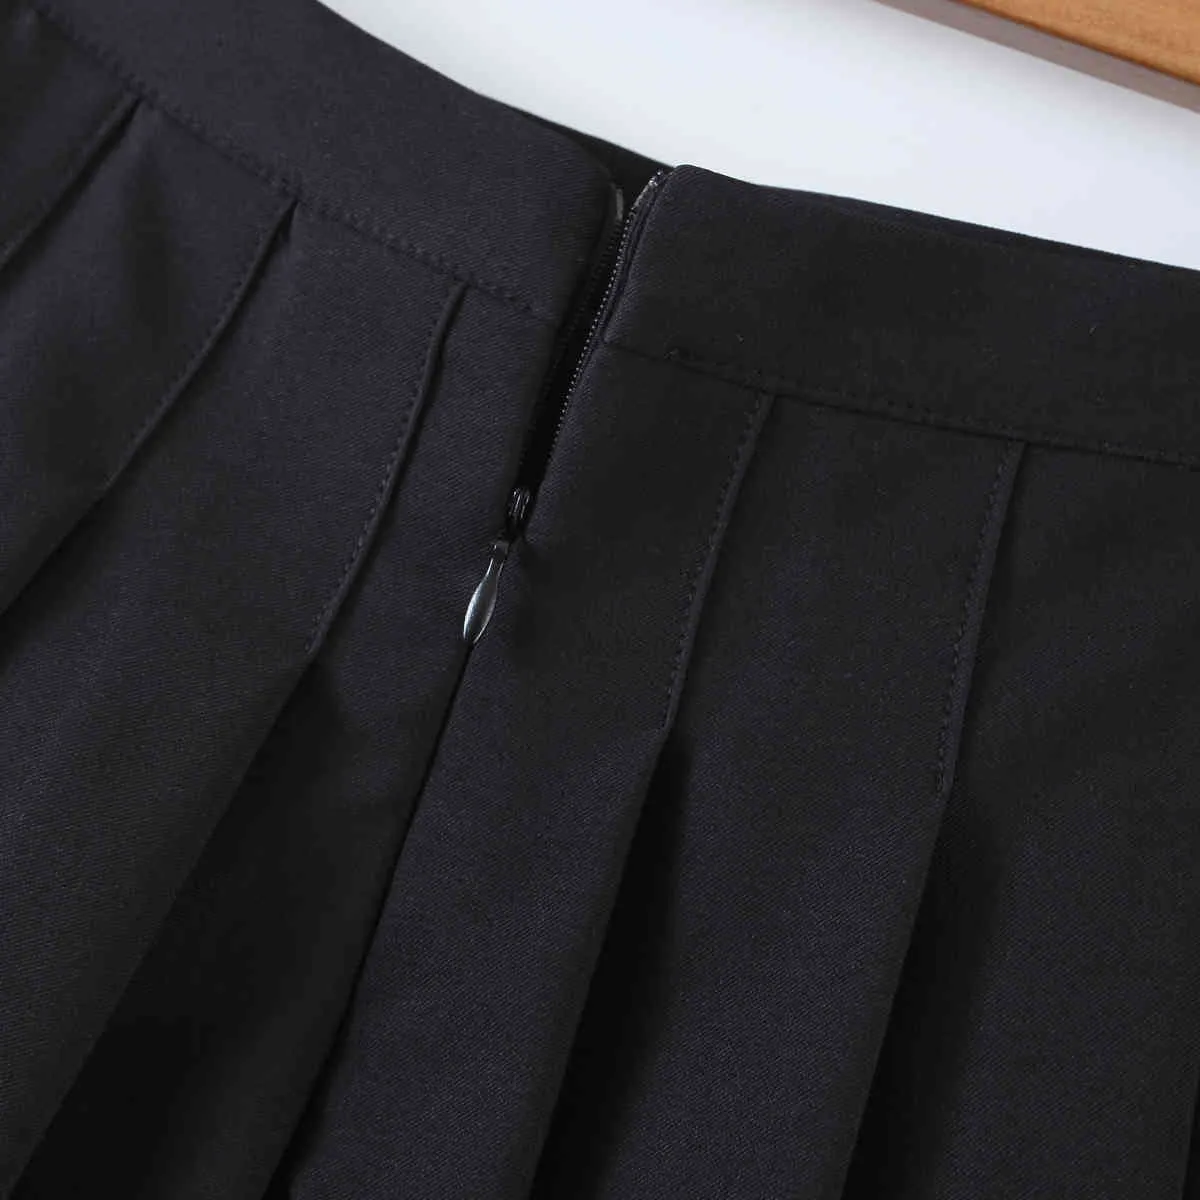 Sommer Vintage geraffte fallen gelassene plissierte Minirock Preppy-Stil hohe Taille A-Linie kurze Röcke schwarz weiße Farbe seitlicher Reißverschluss 210429